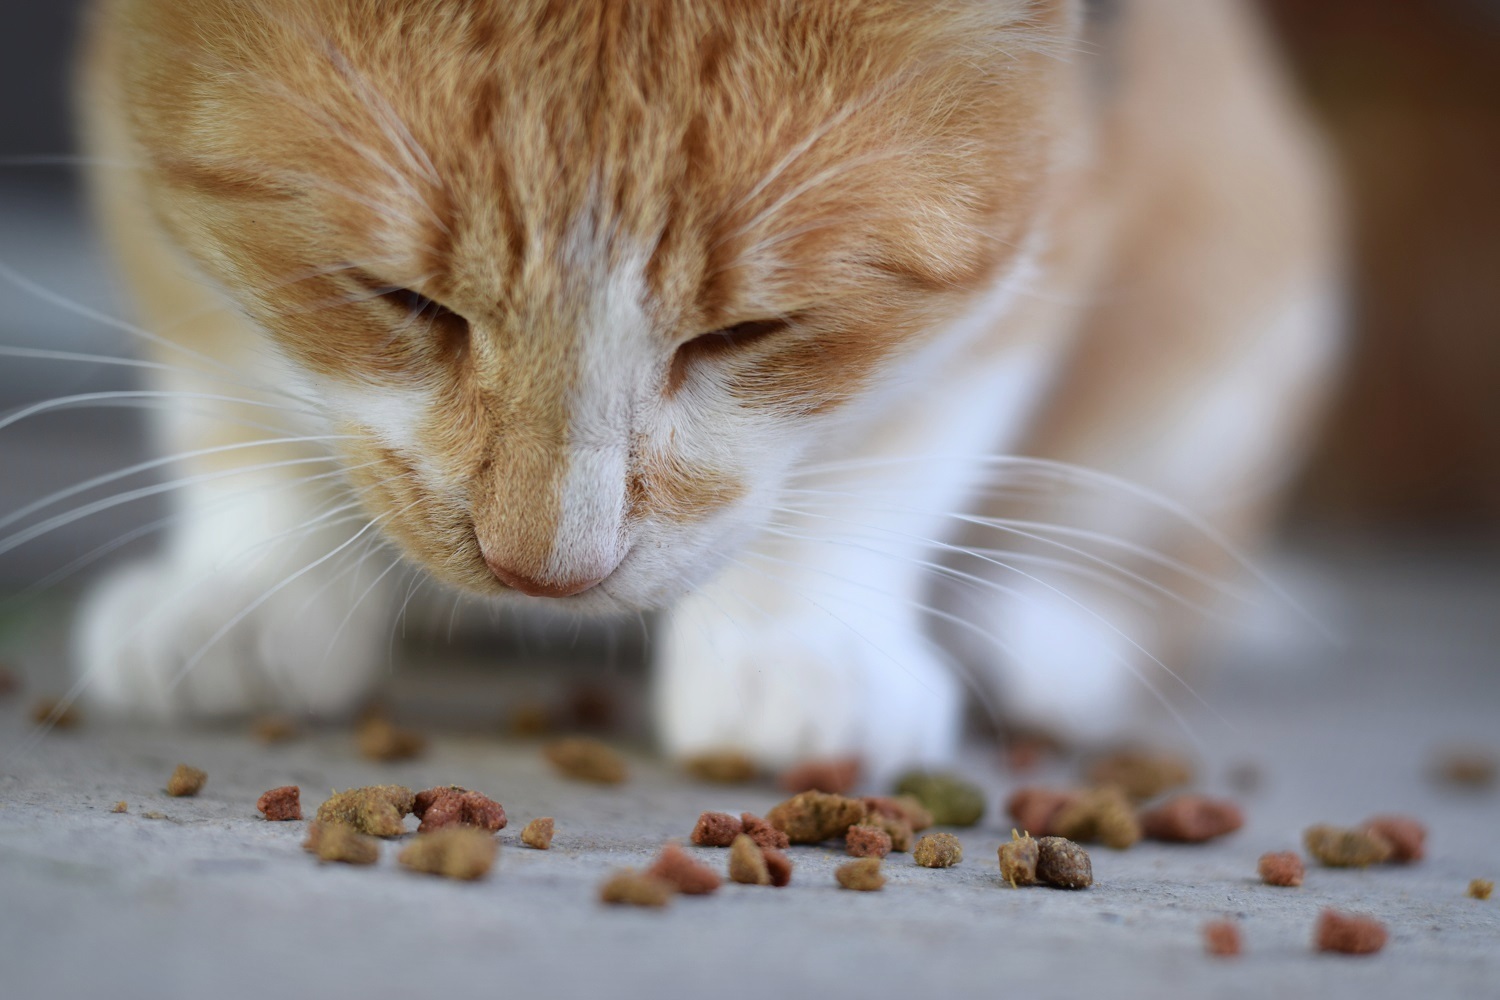 Les 5 meilleures croquettes sans céréales pour chat